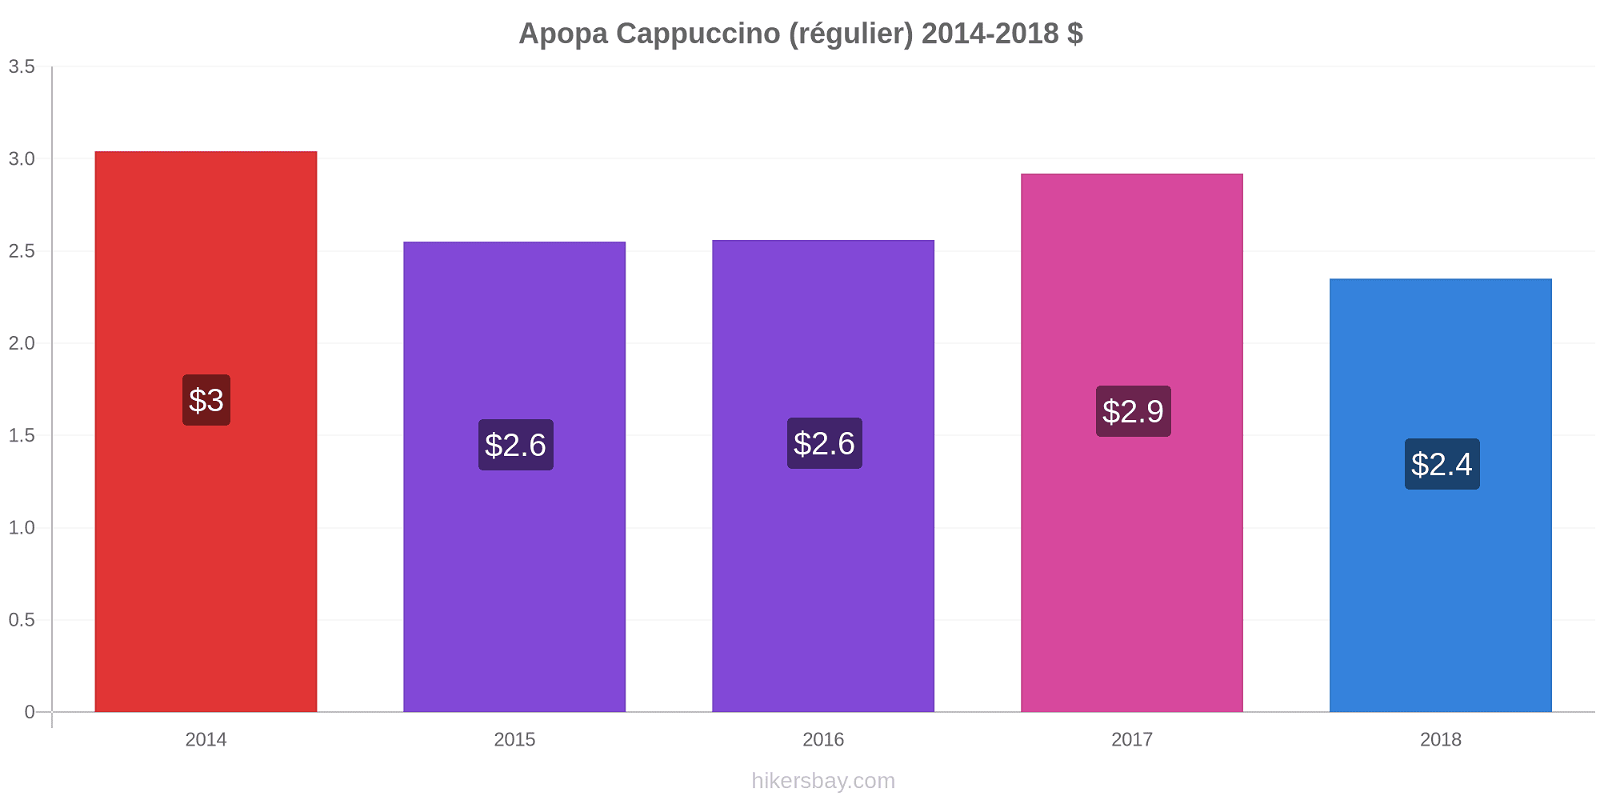 Apopa changements de prix Cappuccino (régulier) hikersbay.com